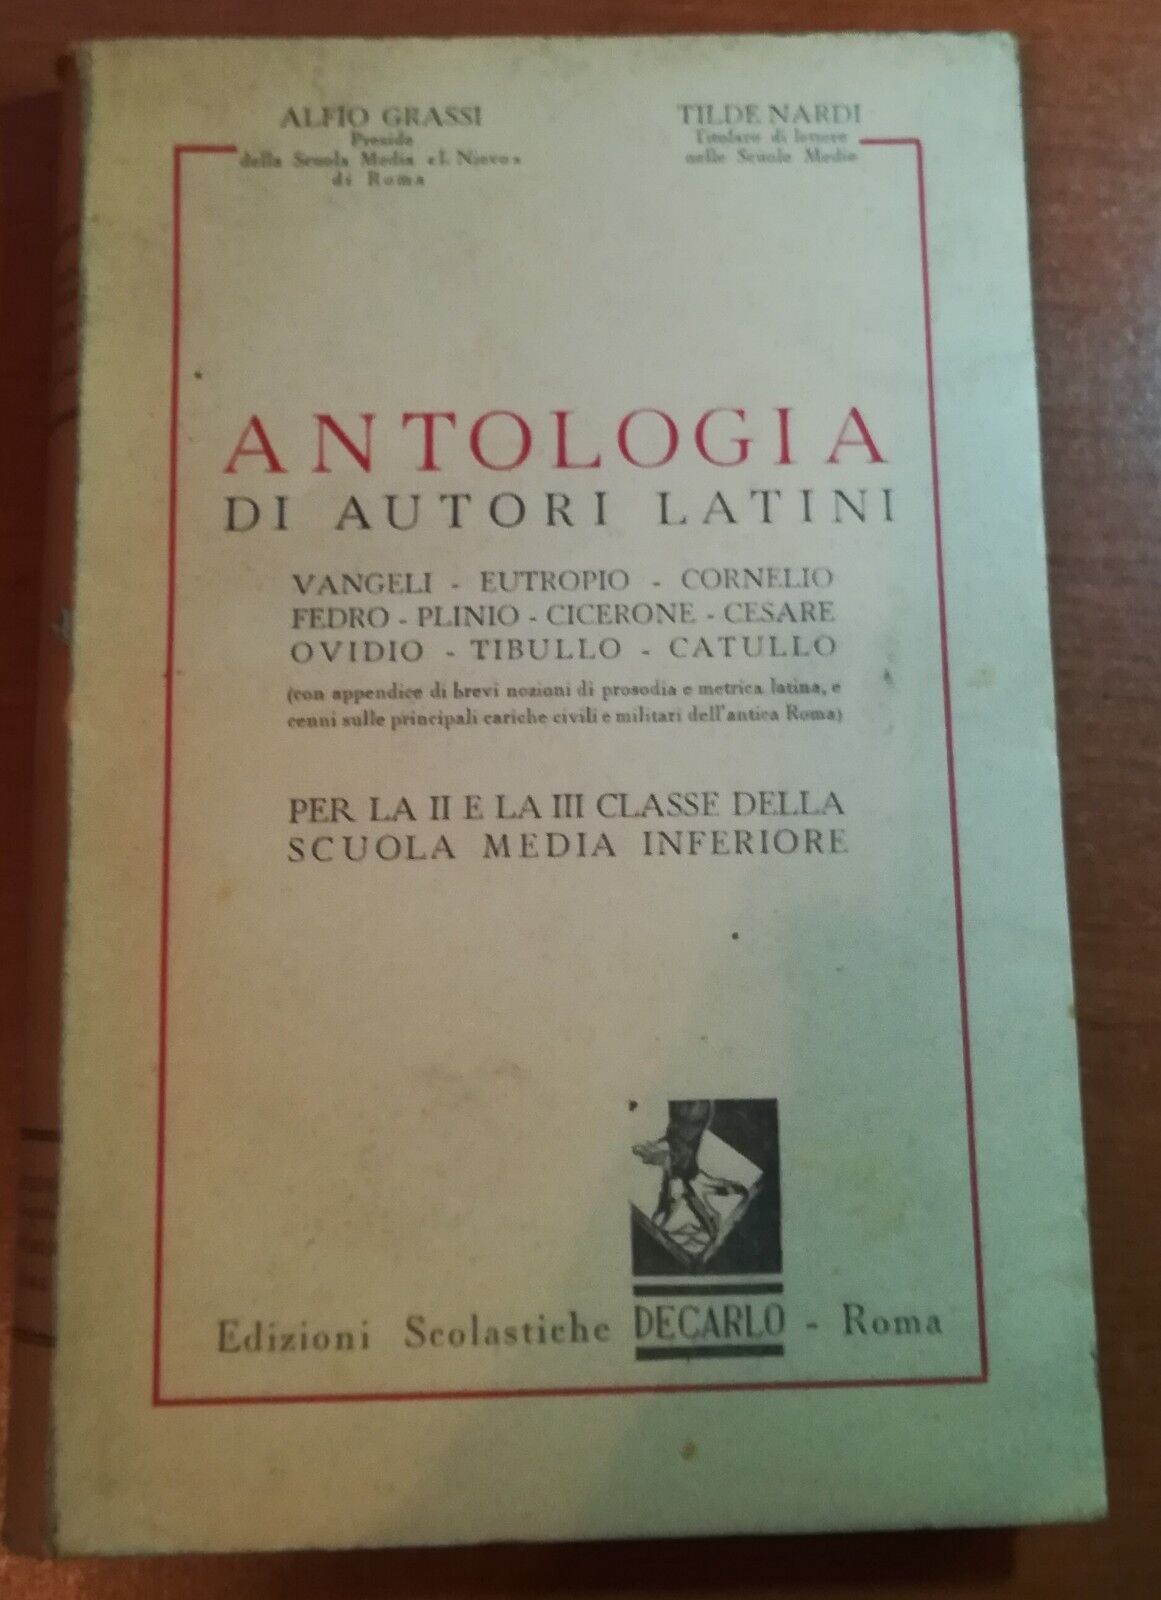 Antologia Di autori latini - A.Grassi/T.Nardi - Decarlo - 1950 - M